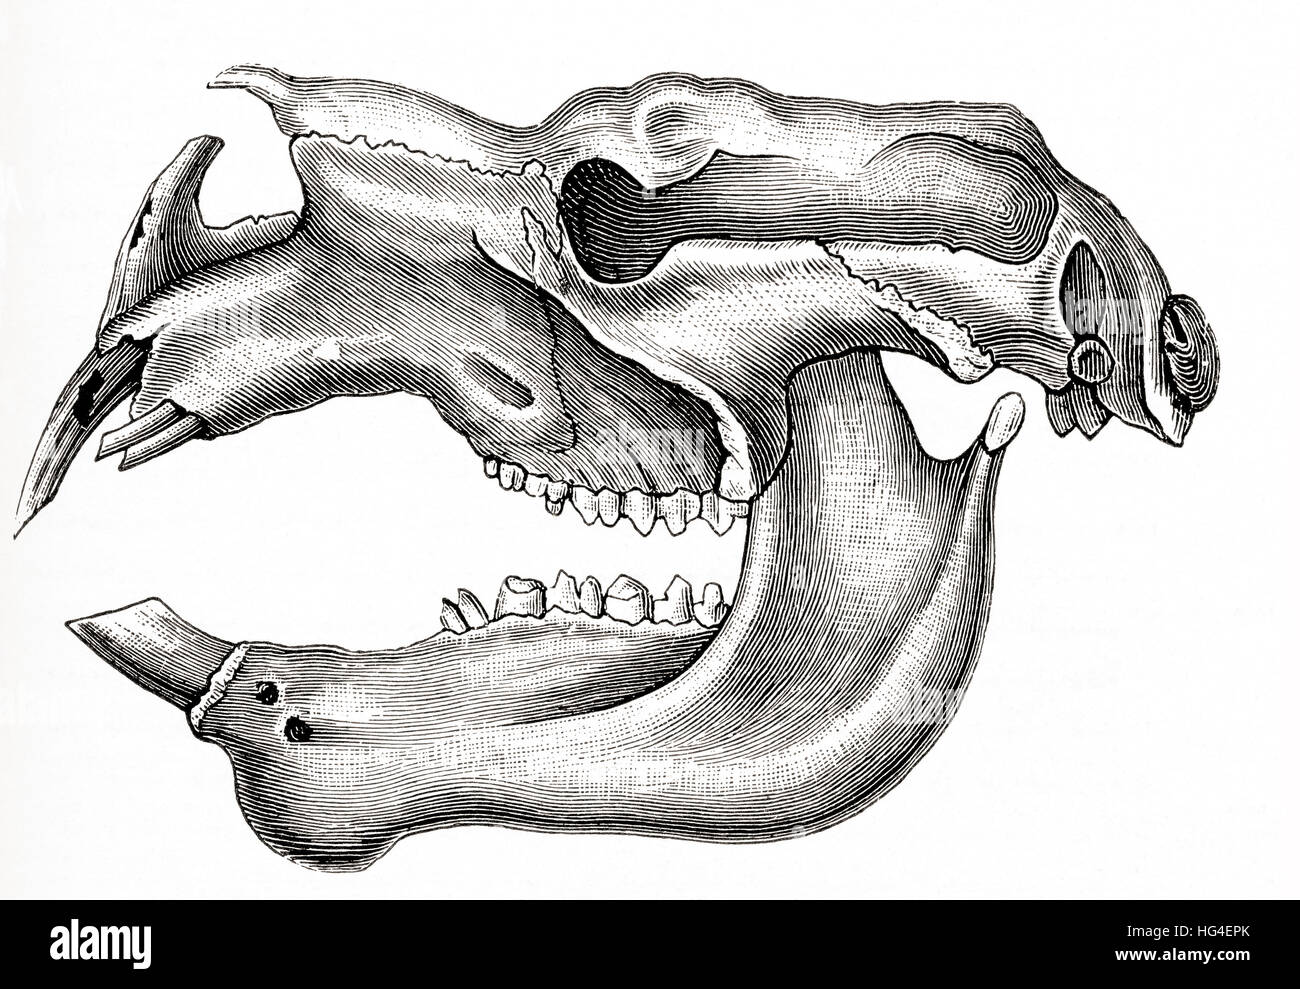 Il cranio e la mascella inferiore di un gigantesco estinto marsupiale, Diprotodon australis. Da Meyers lessico, pubblicato 1924. Foto Stock